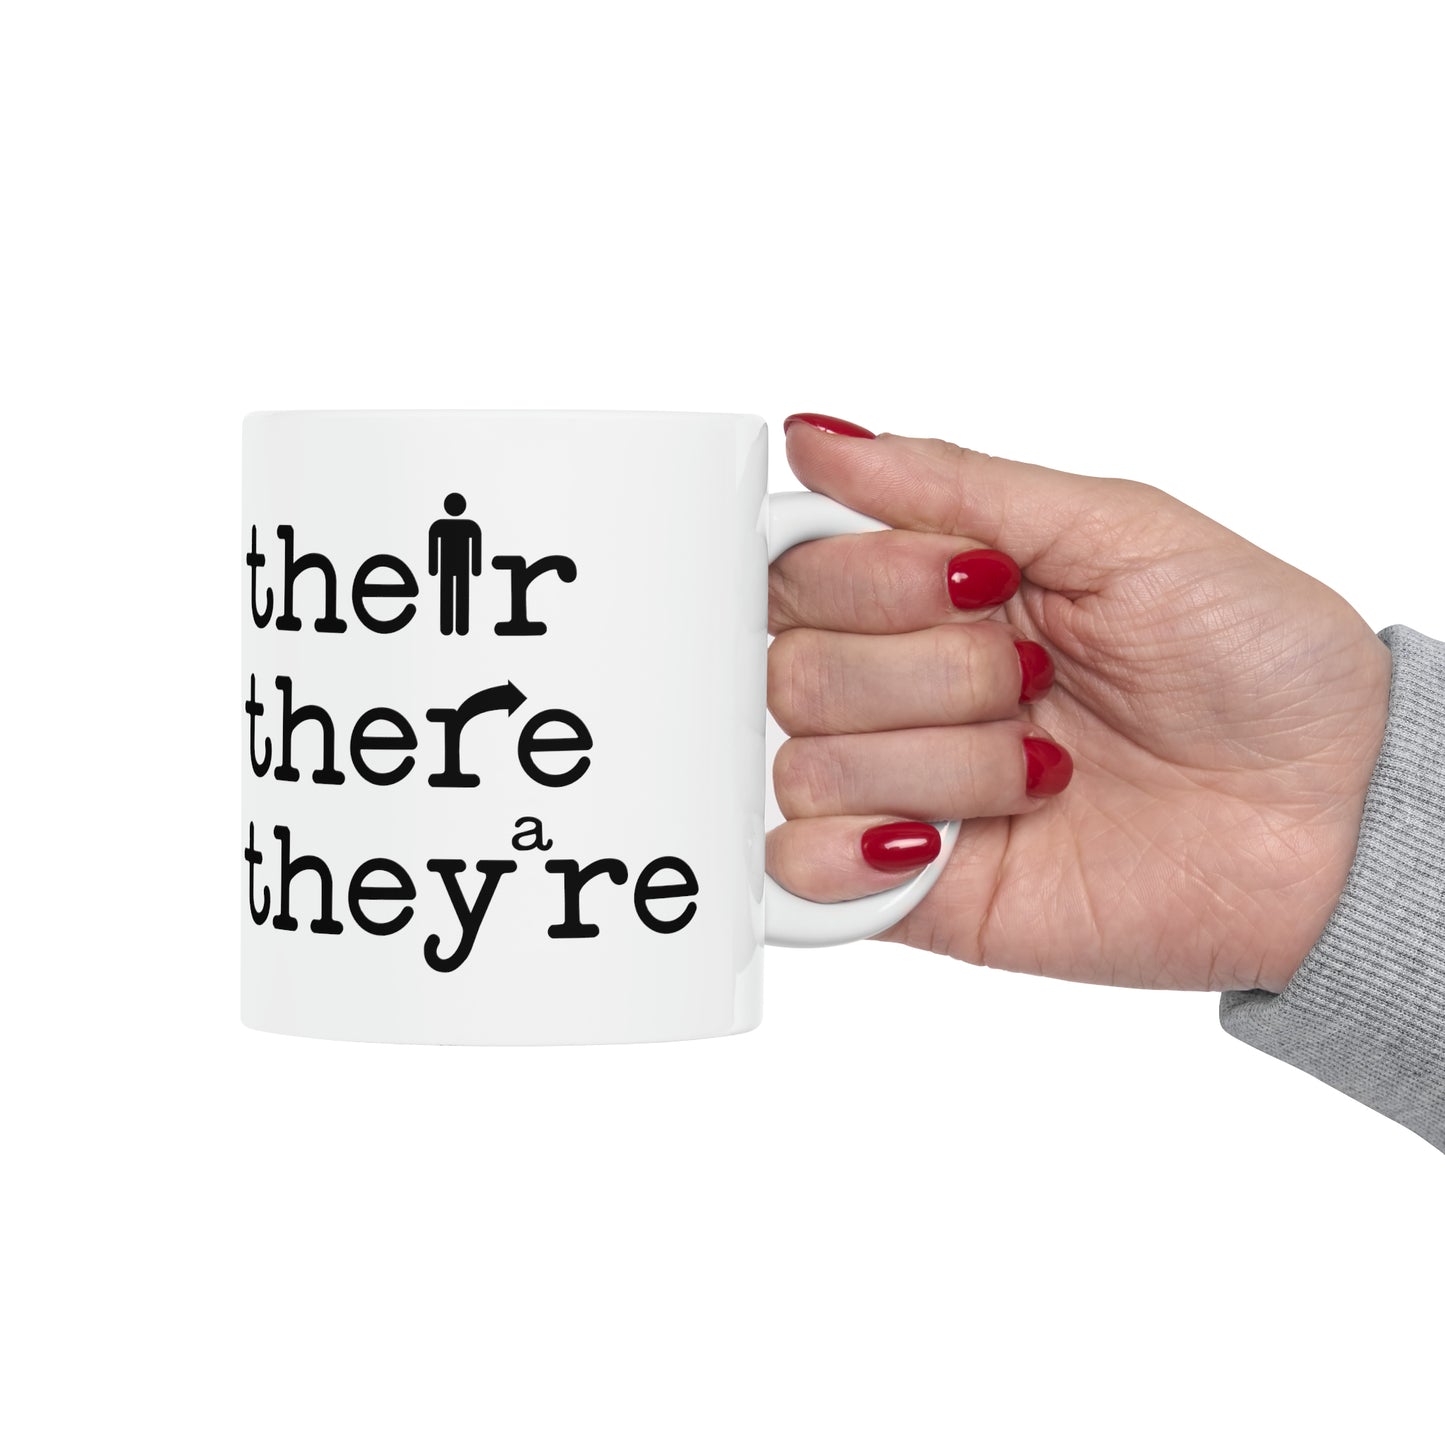 grammar coffee mug